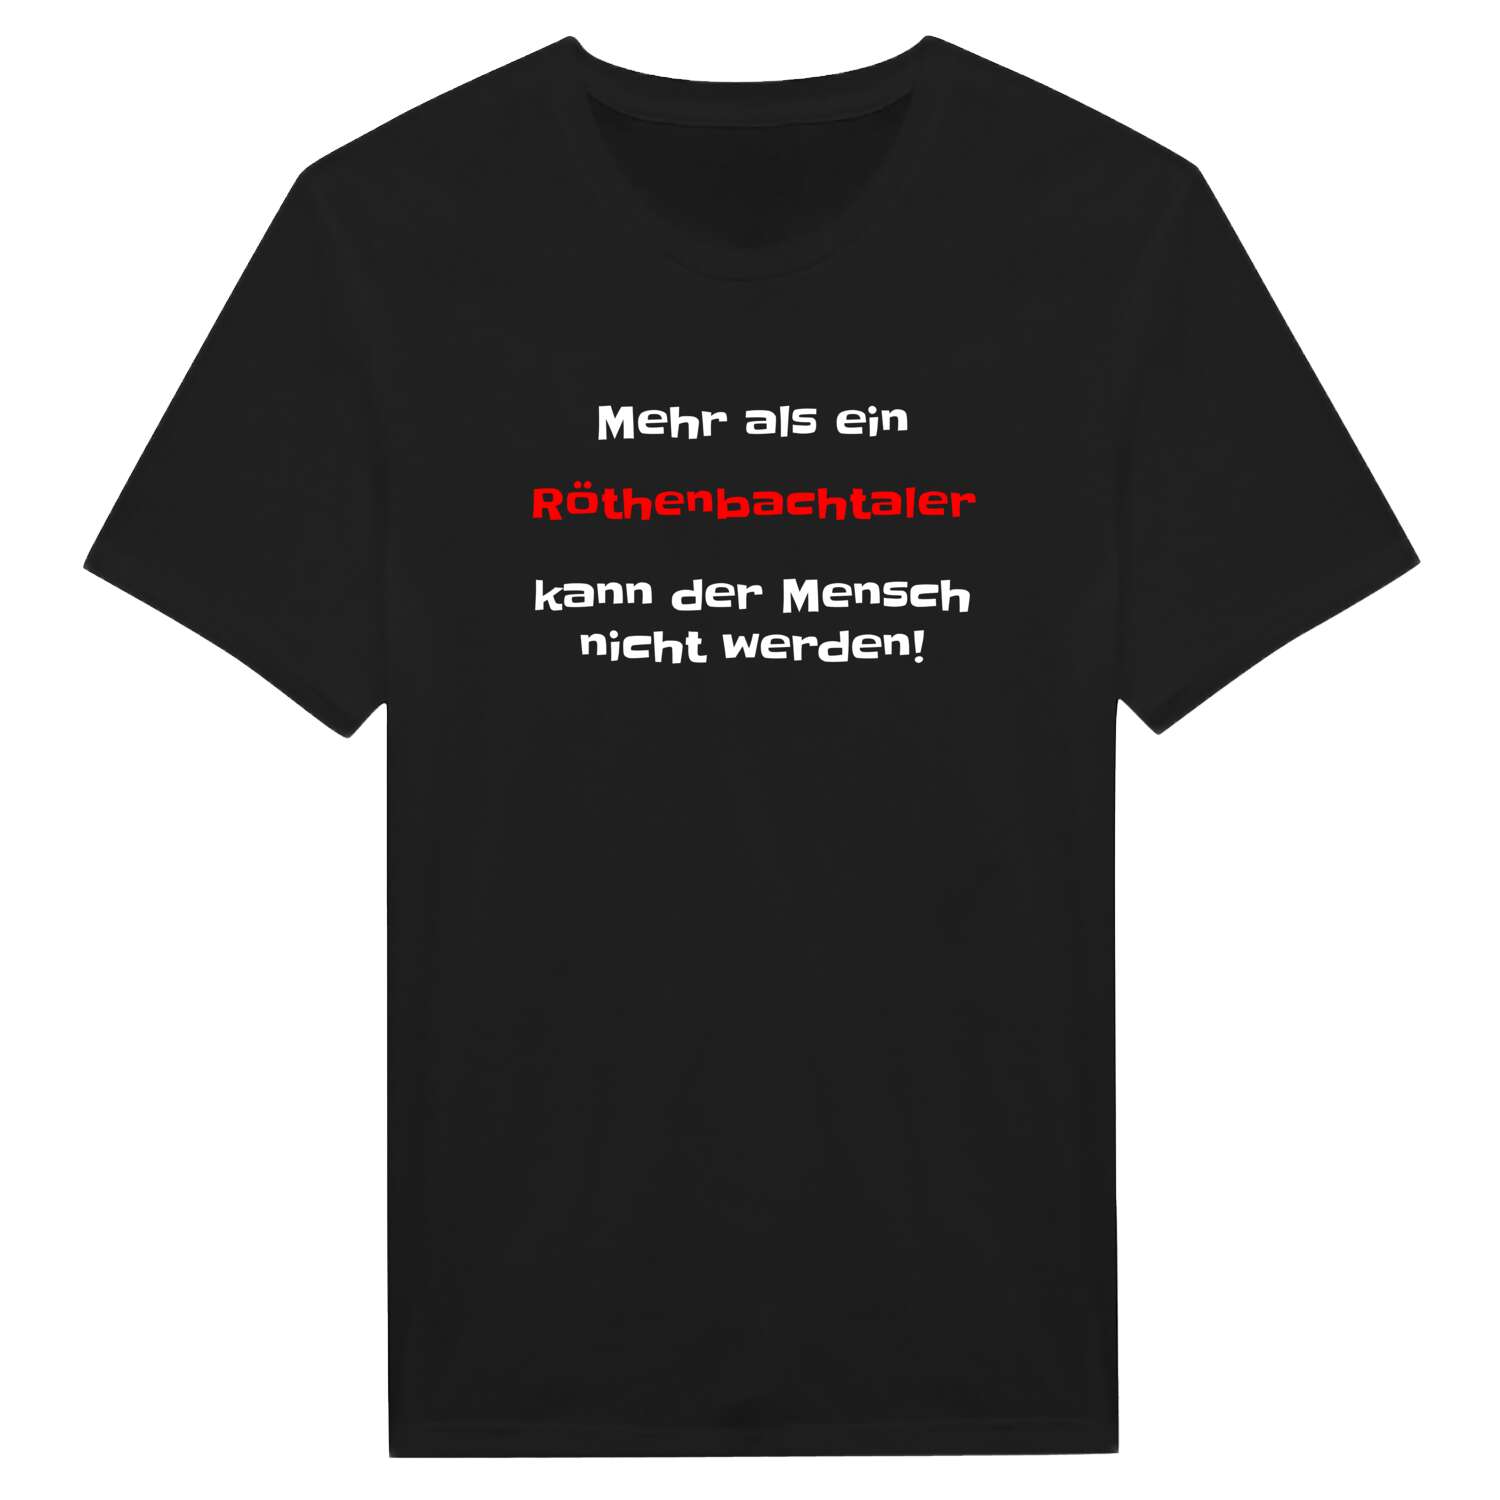 Röthenbachtal T-Shirt »Mehr als ein«